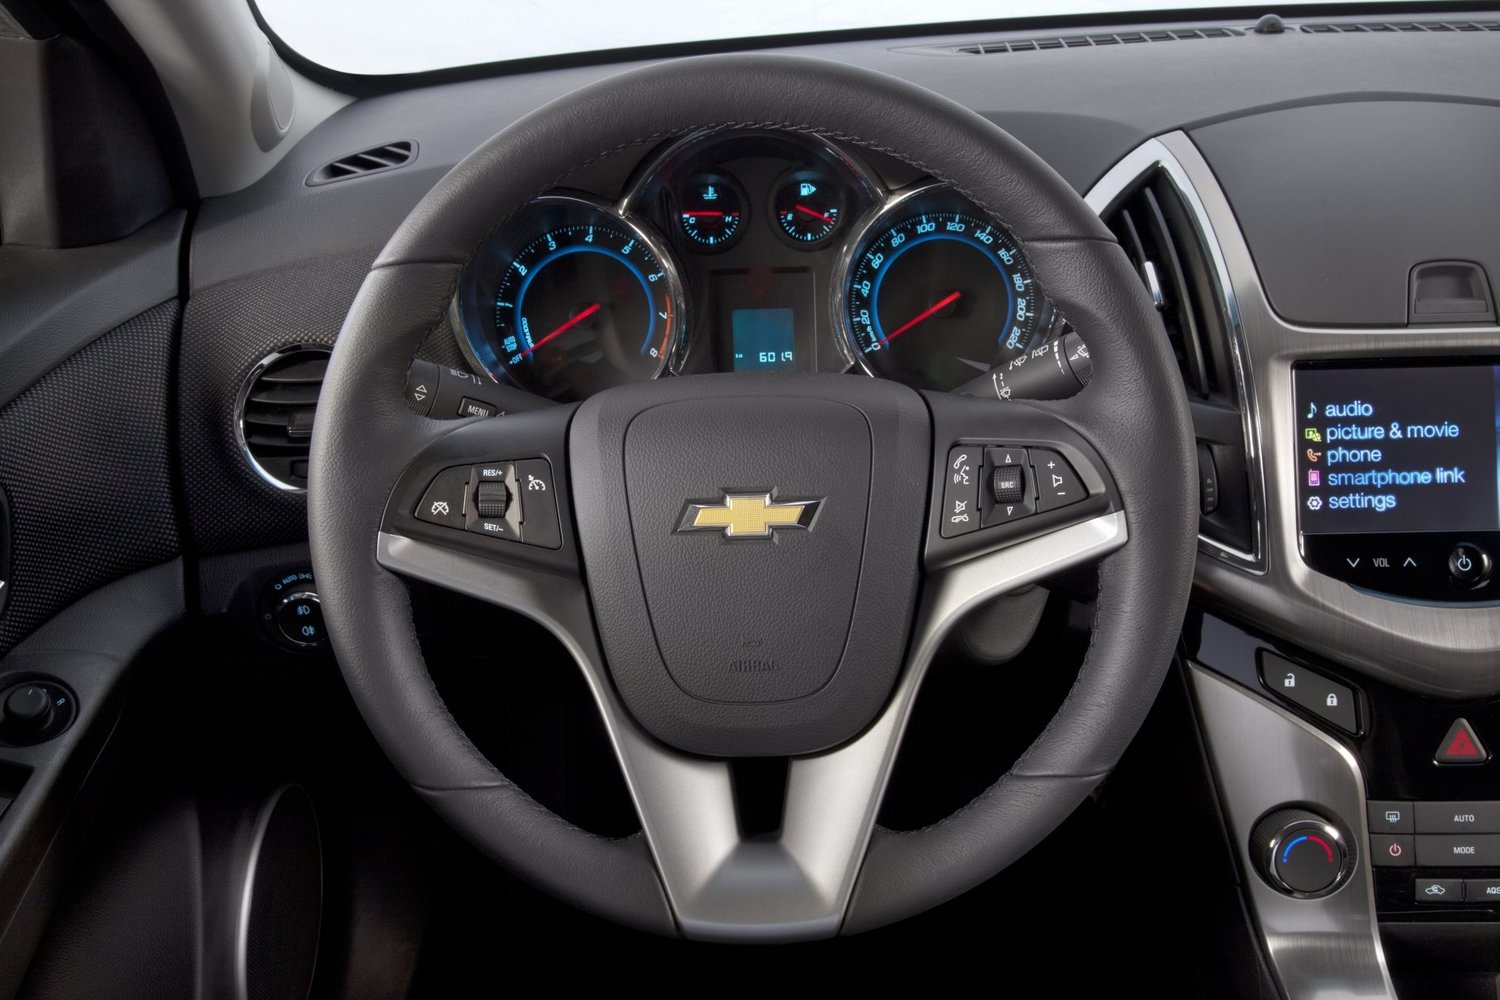 хэтчбек 5 дв. Chevrolet Cruze 2012 - 2015г выпуска модификация 1.4 MT (140 л.с.)